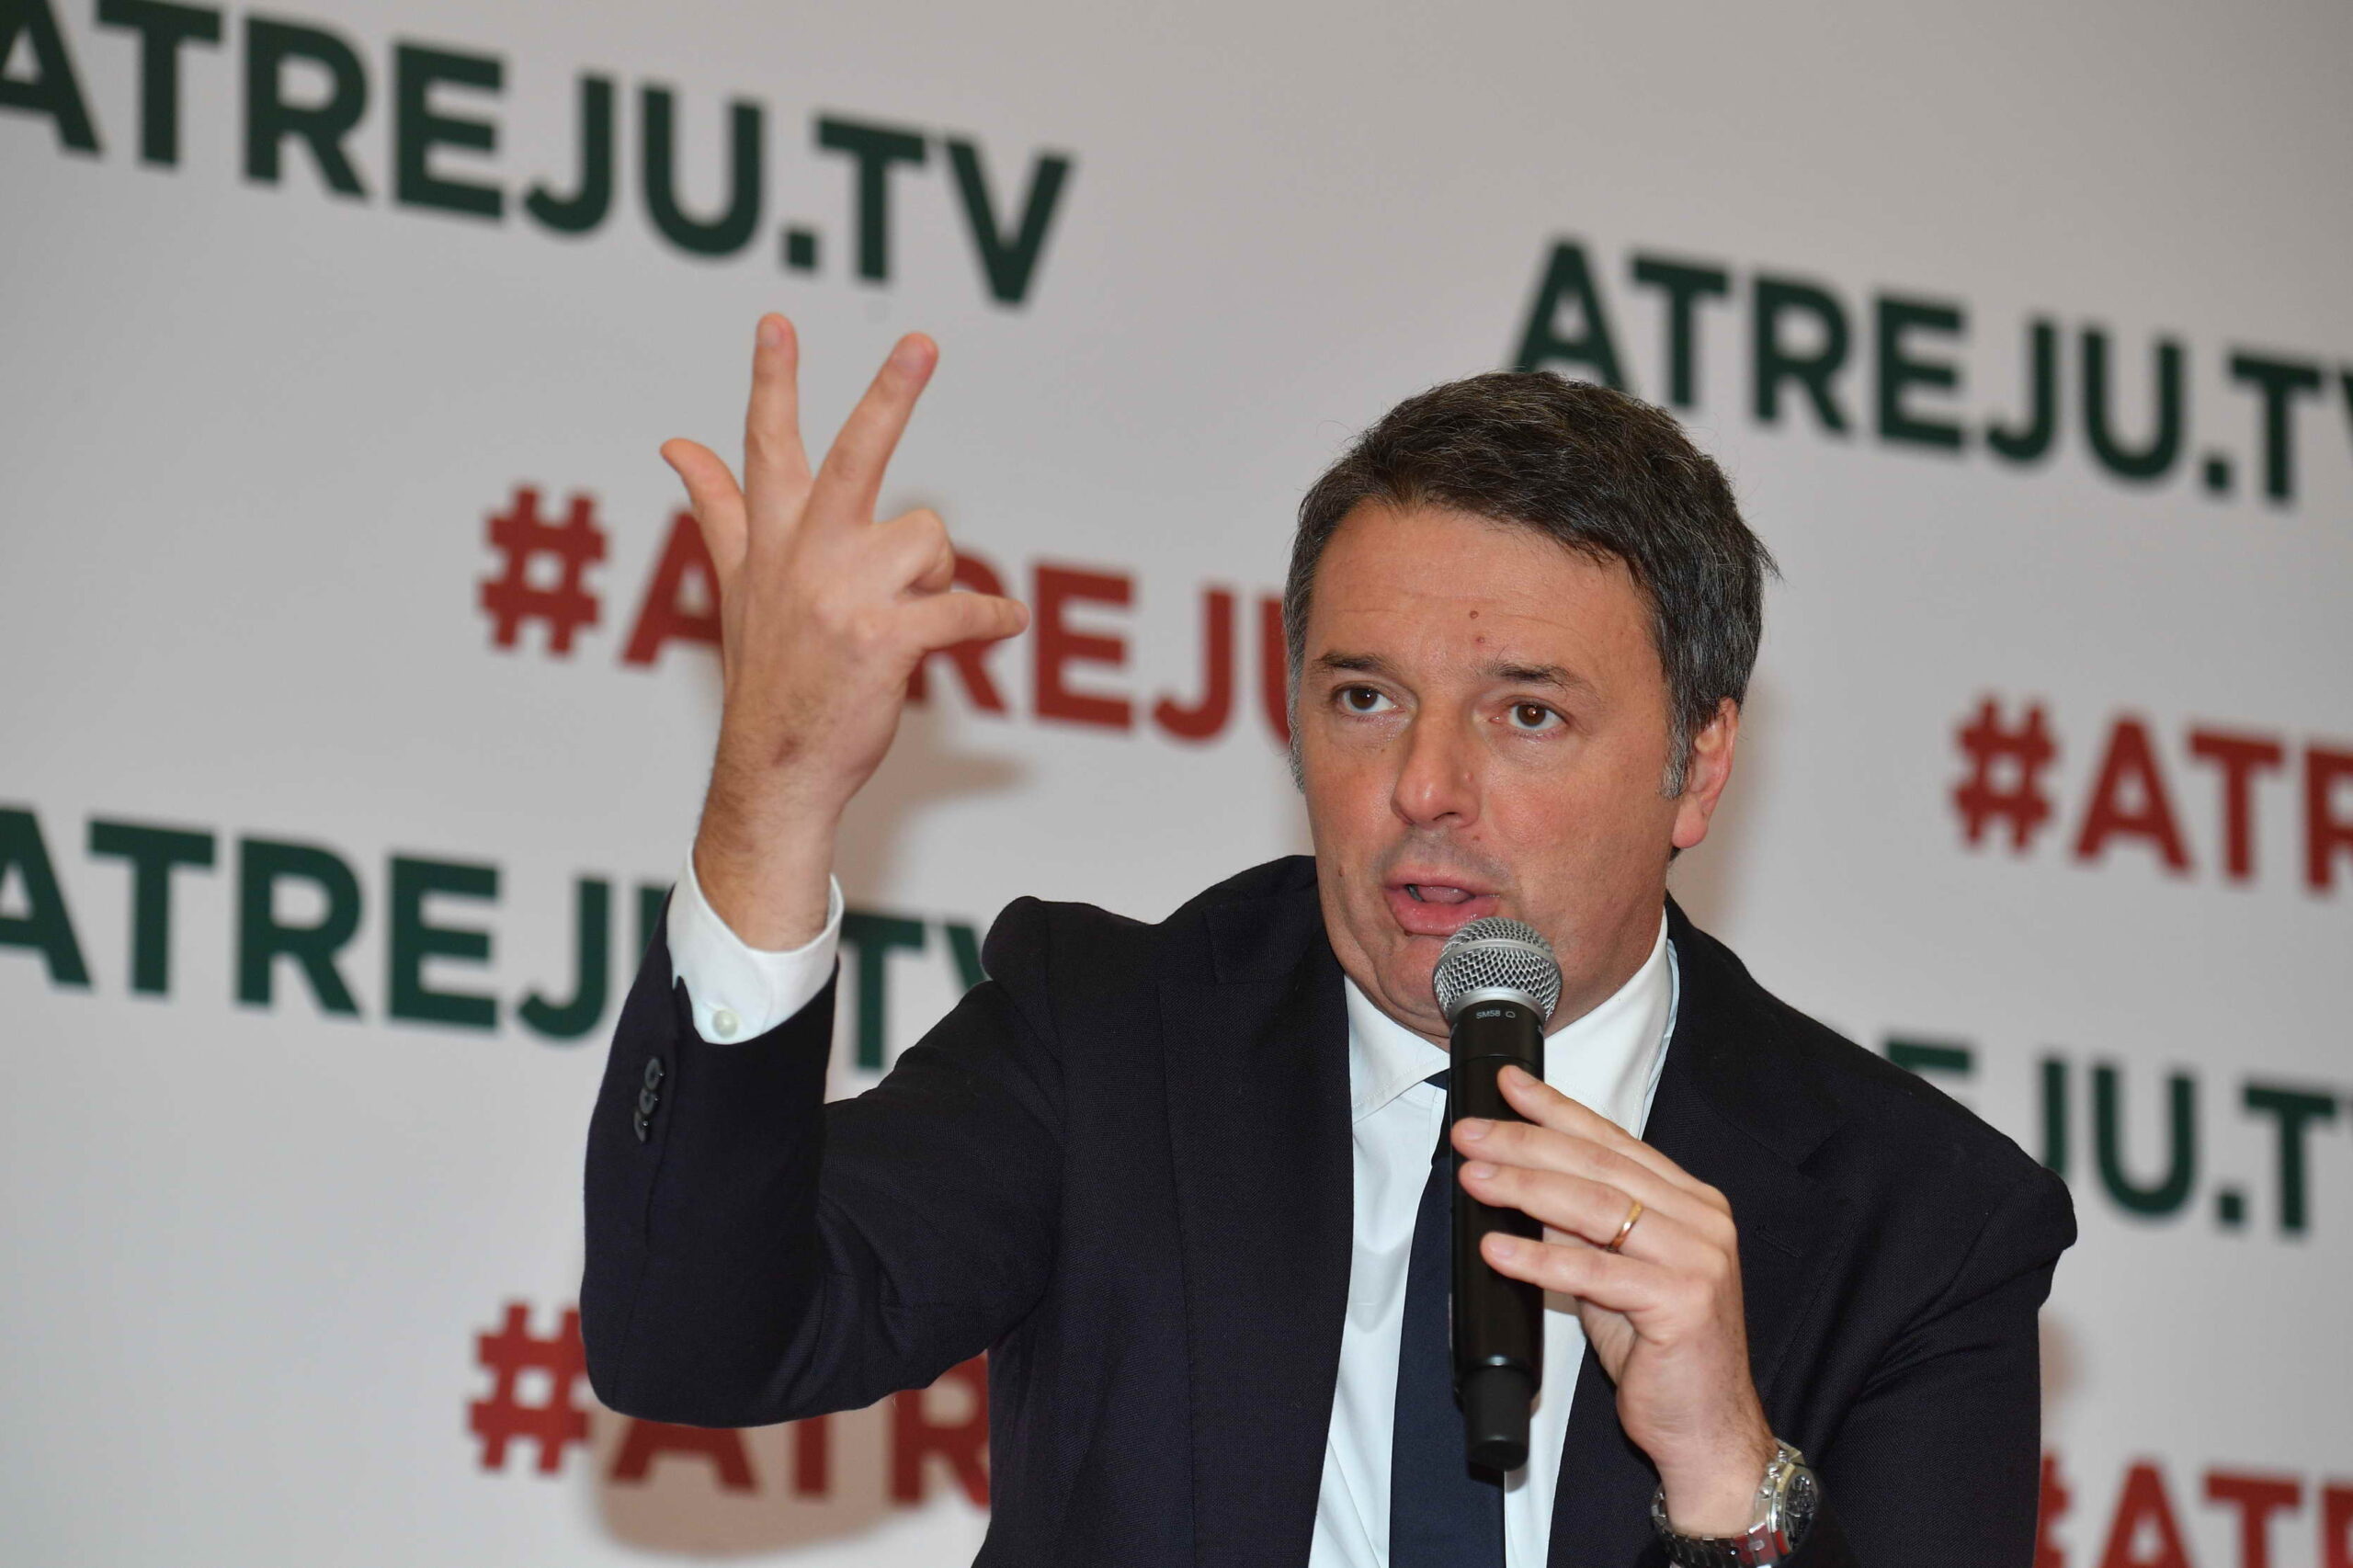 Europee, Renzi: "Che tristezza chi si candida per qualche punto percentuale in più, io mi rimetto in gioco"